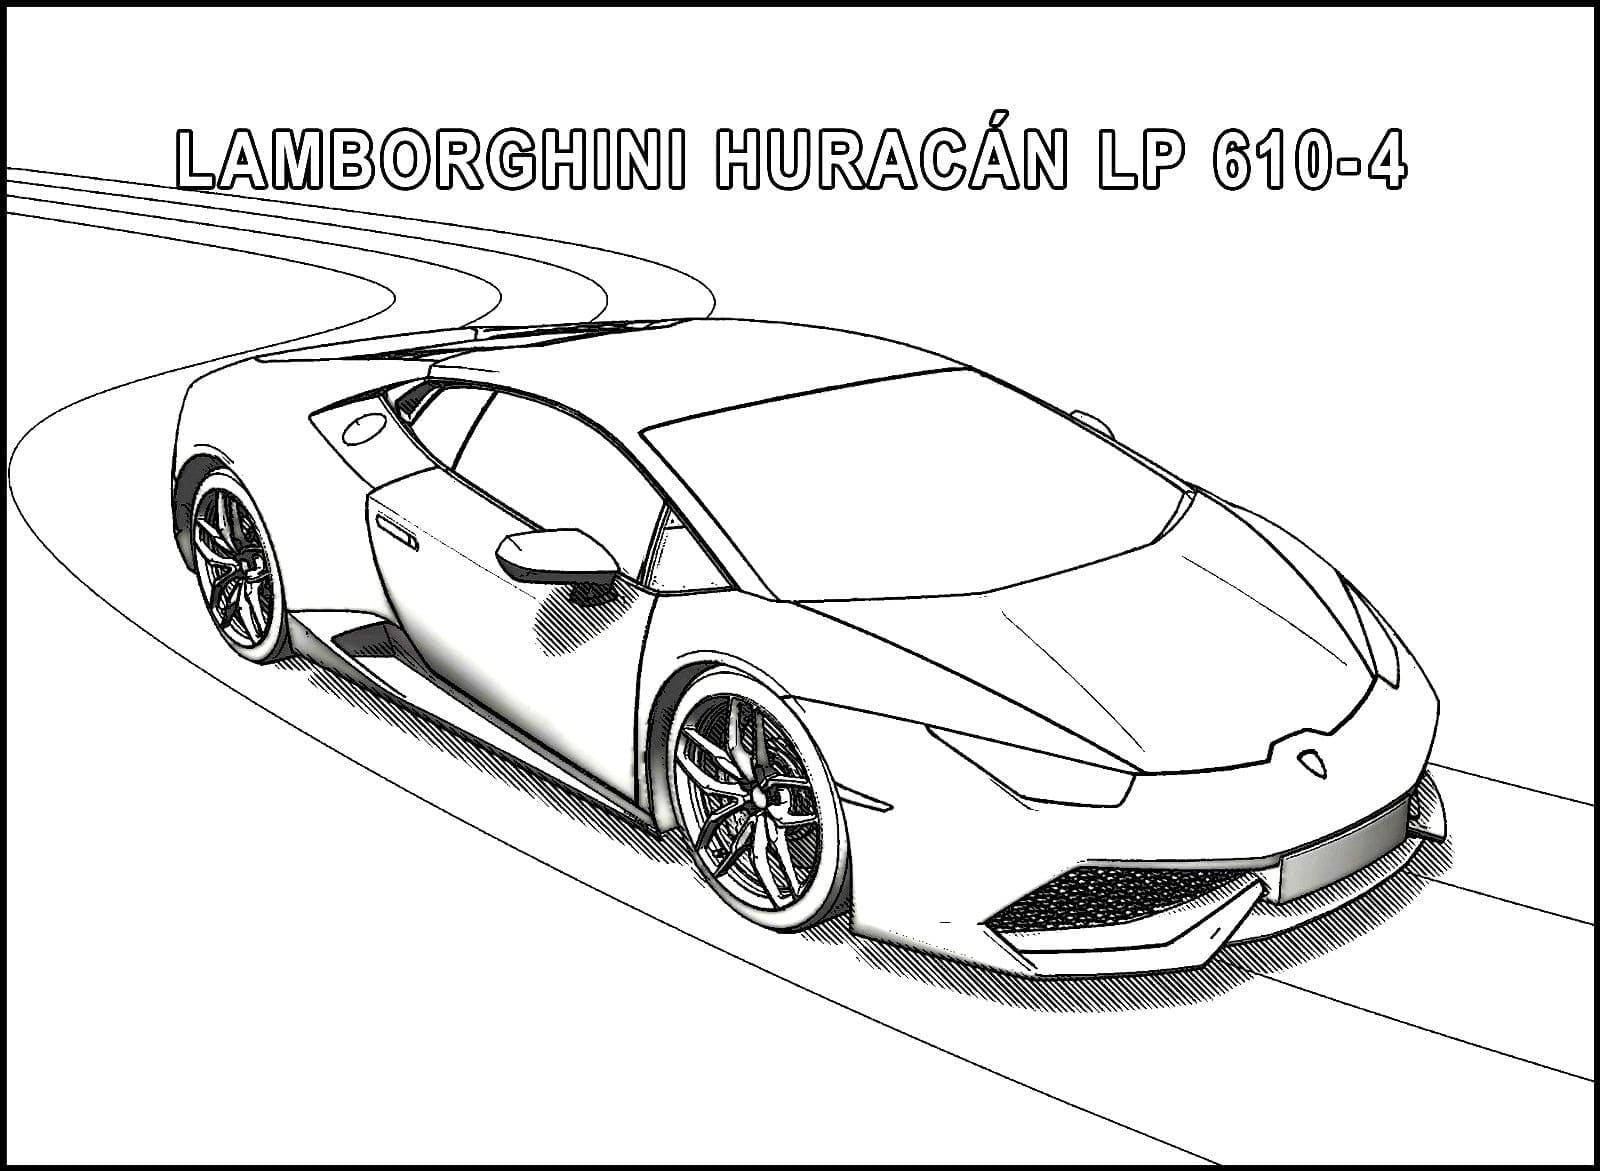 Lamborghini huracan lp 610-4